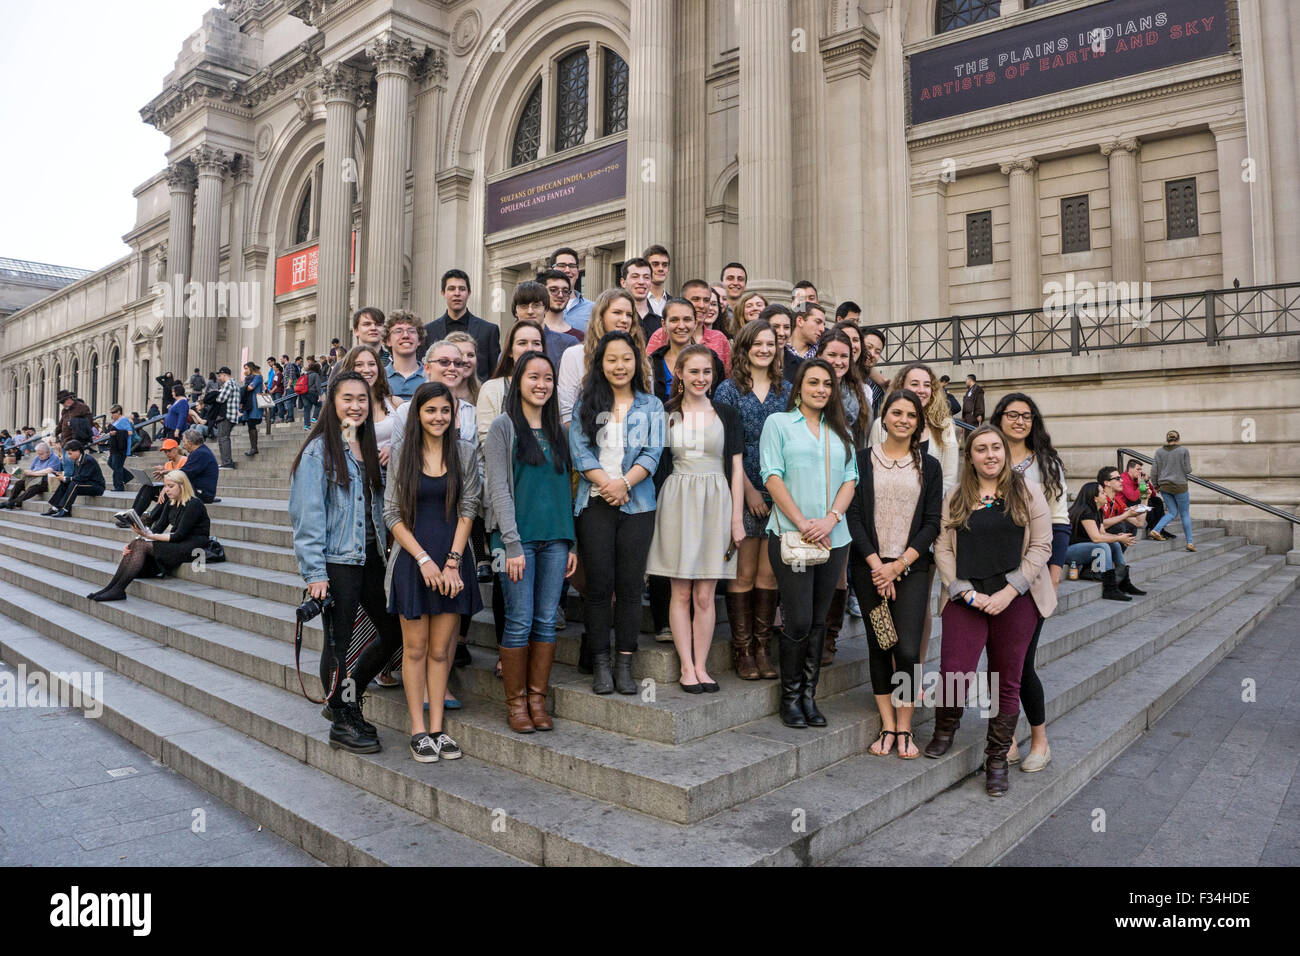 Gemischtrassig Klasse der Schülerinnen und Schüler auf Exkursion posieren für ein Gruppenporträt außerhalb auf Stufen des Metropolitan Museum of Art Stockfoto